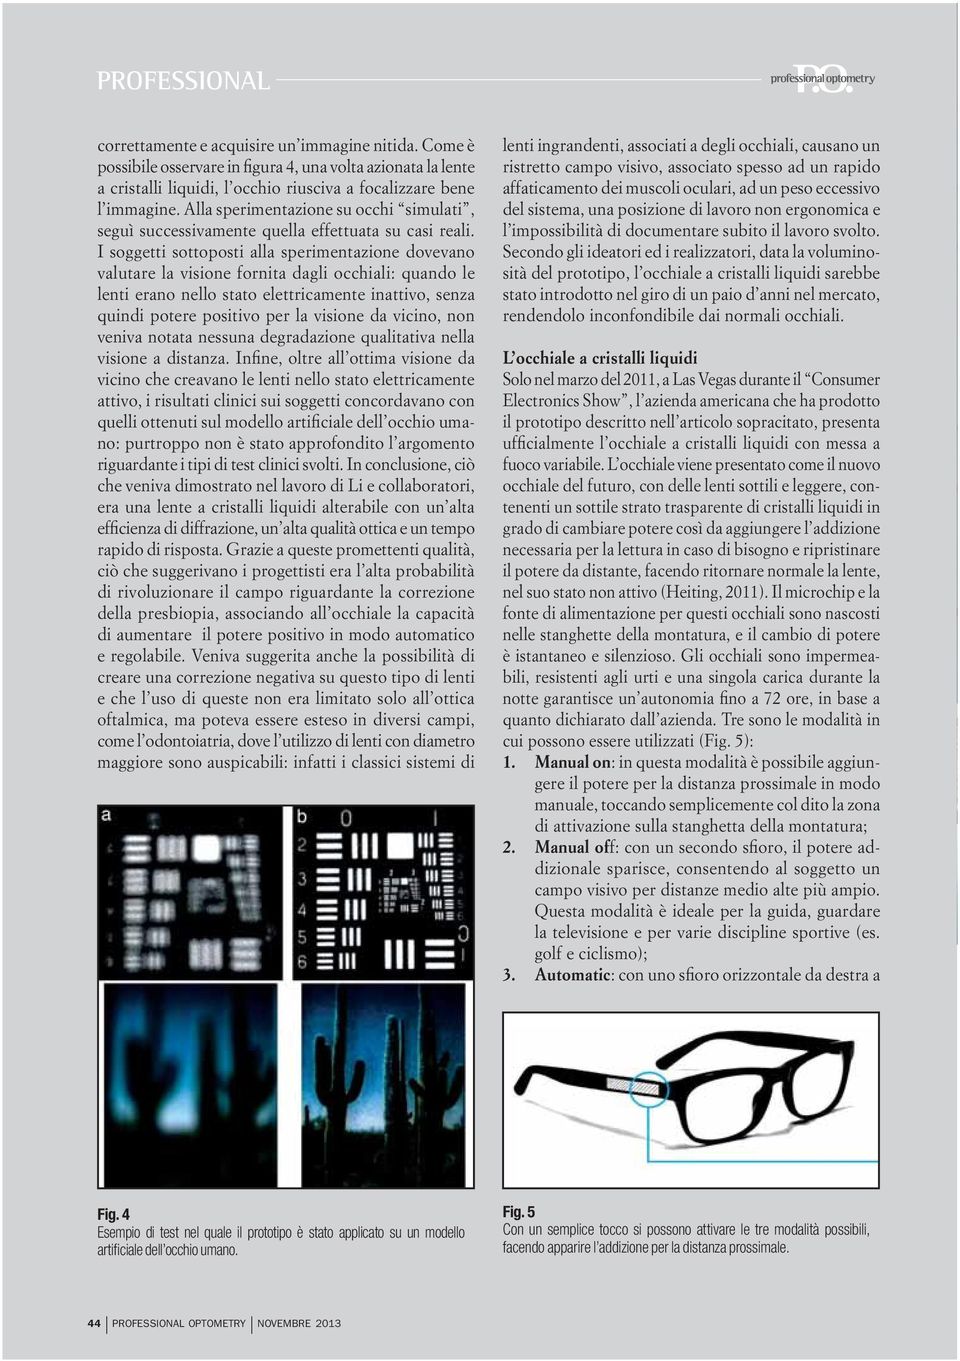 I soggetti sottoposti alla sperimentazione dovevano valutare la visione fornita dagli occhiali: quando le lenti erano nello stato elettricamente inattivo, senza quindi potere positivo per la visione